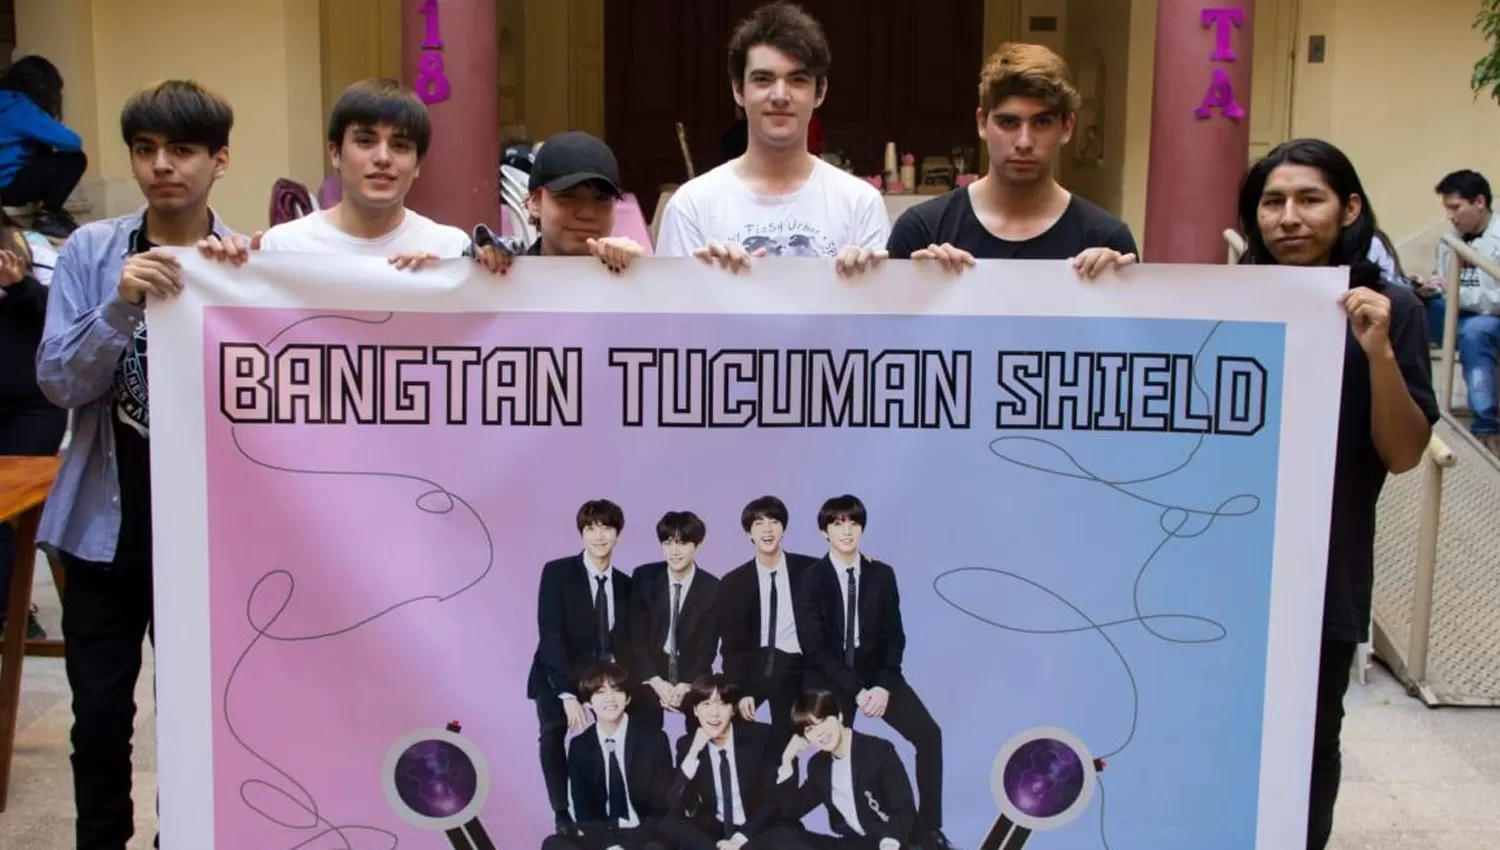 La fiebre por BTS llegó a Tucumán: los fans alquilaron una pantalla para difundir a la banda